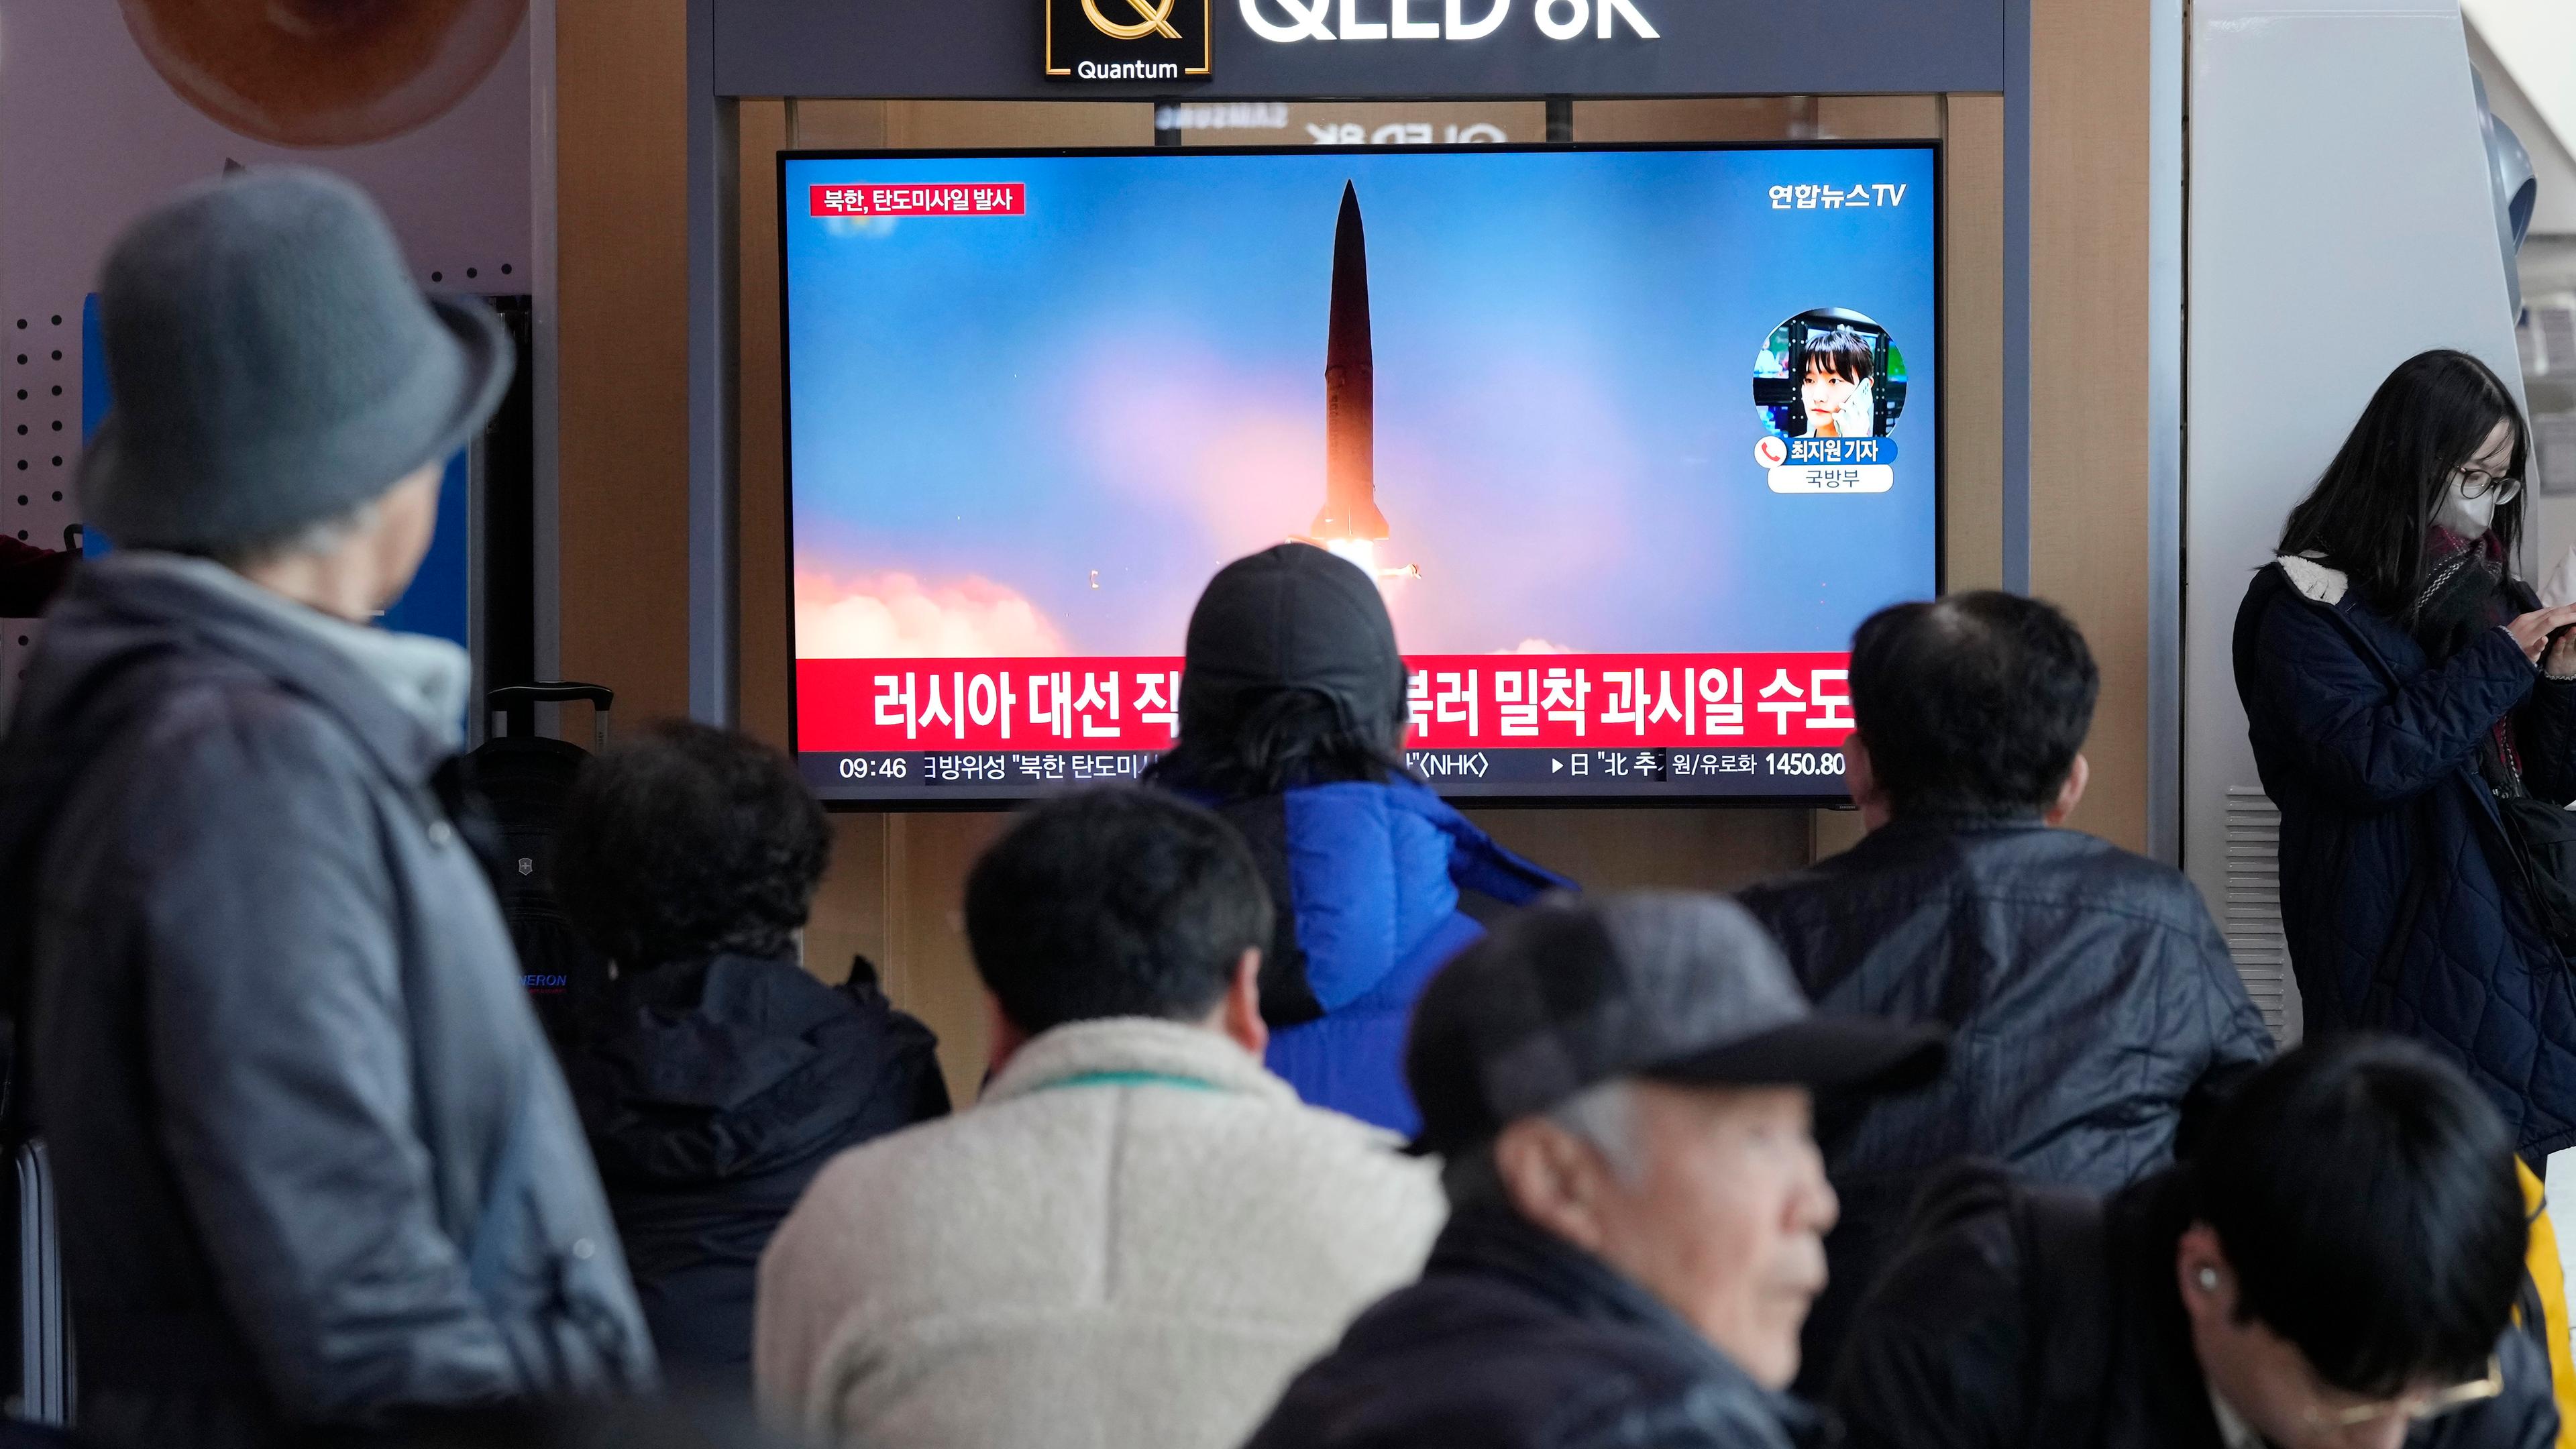 Ein Fernsehbildschirm zeigt einen nordkoreanischen Raketenstart im Bahnhof von Seoul, Südkorea.